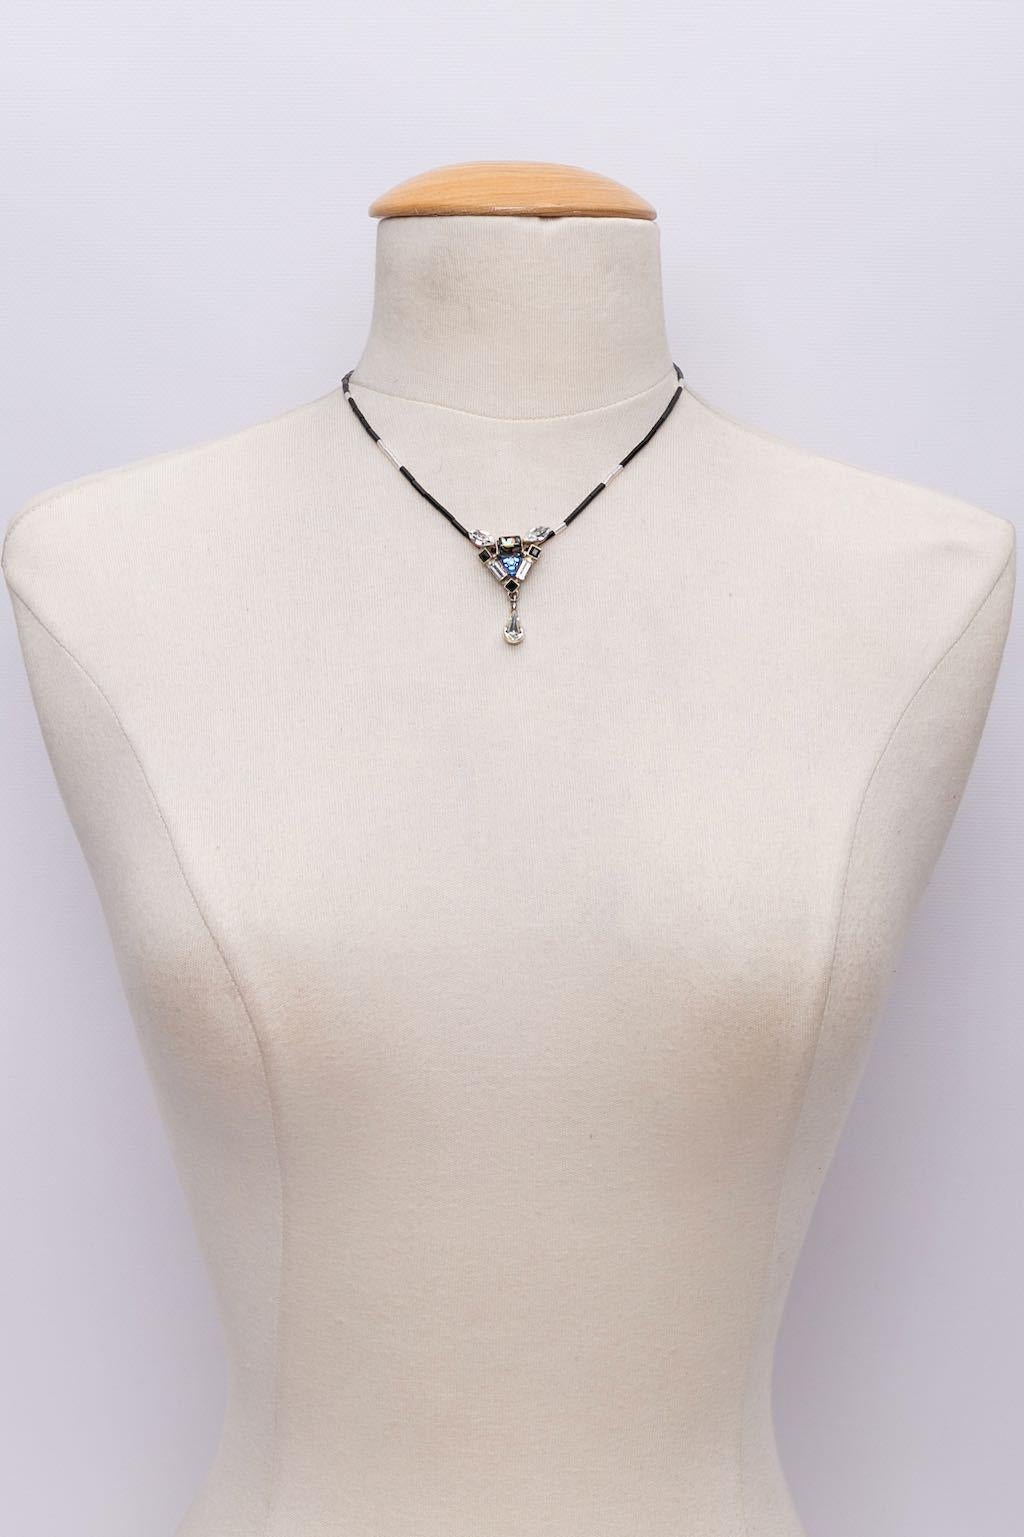 Christian Lacroix - (Made in France) Kurze Halskette aus röhrenförmigen Perlen, an der ein versilberter, mit Strasssteinen und Perlen besetzter Anhänger hängt.

Zusätzliche Informationen:
Zustand: Sehr guter Zustand. Oxidation des Metalls auf der